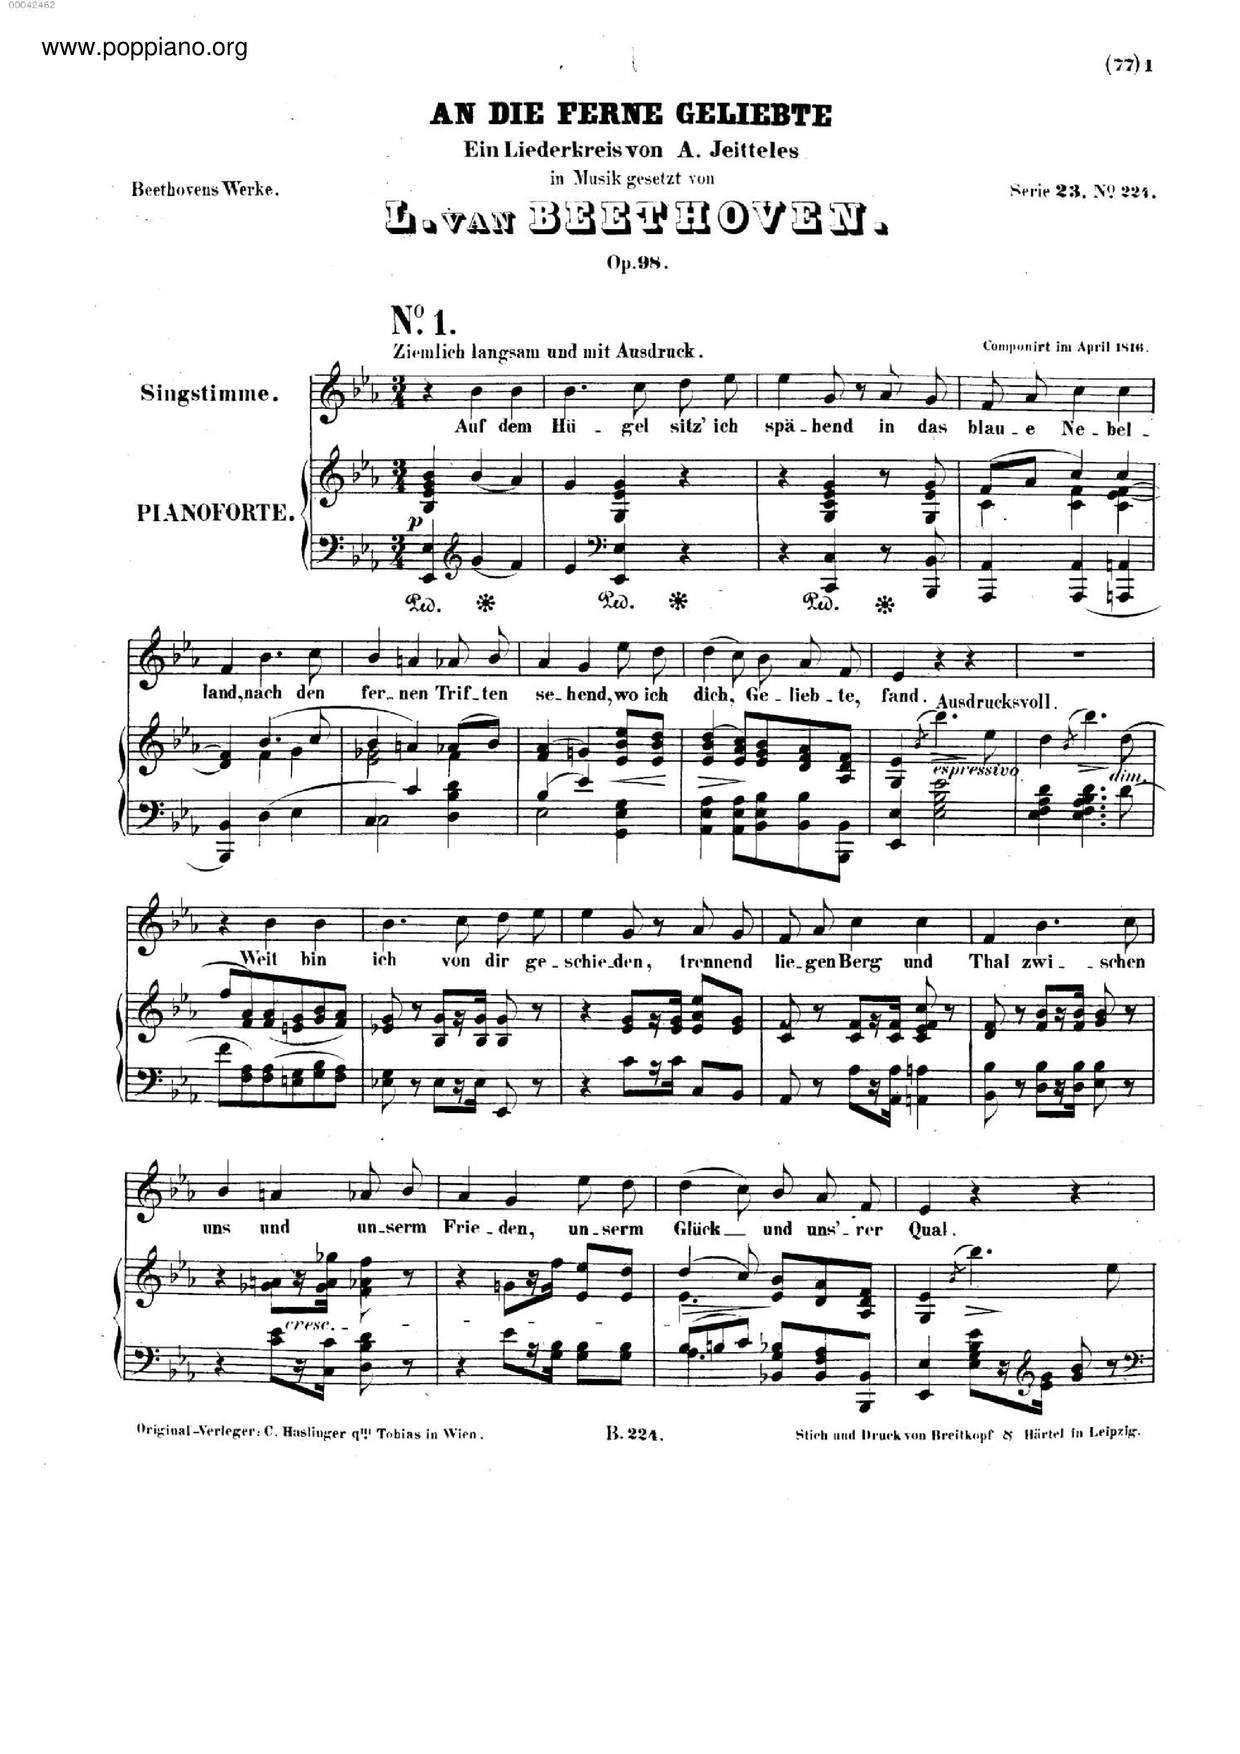 An Die Ferne Geliebte, Op. 98 Score